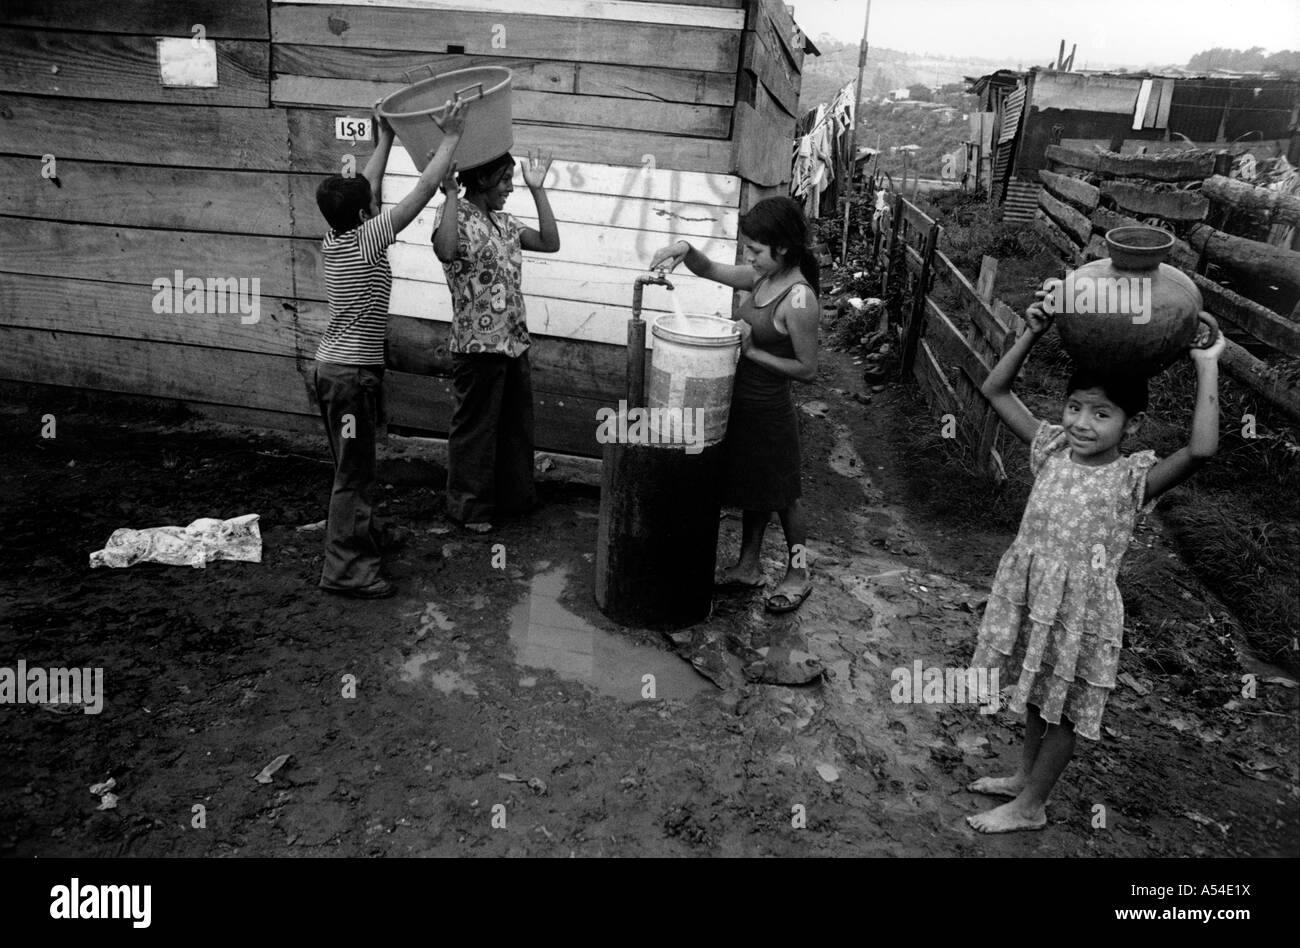 Painet hn1969 564 in bianco e nero di acqua pubblica presa montante baraccopoli di Città del Guatemala, paese nazione in via di sviluppo meno Foto Stock